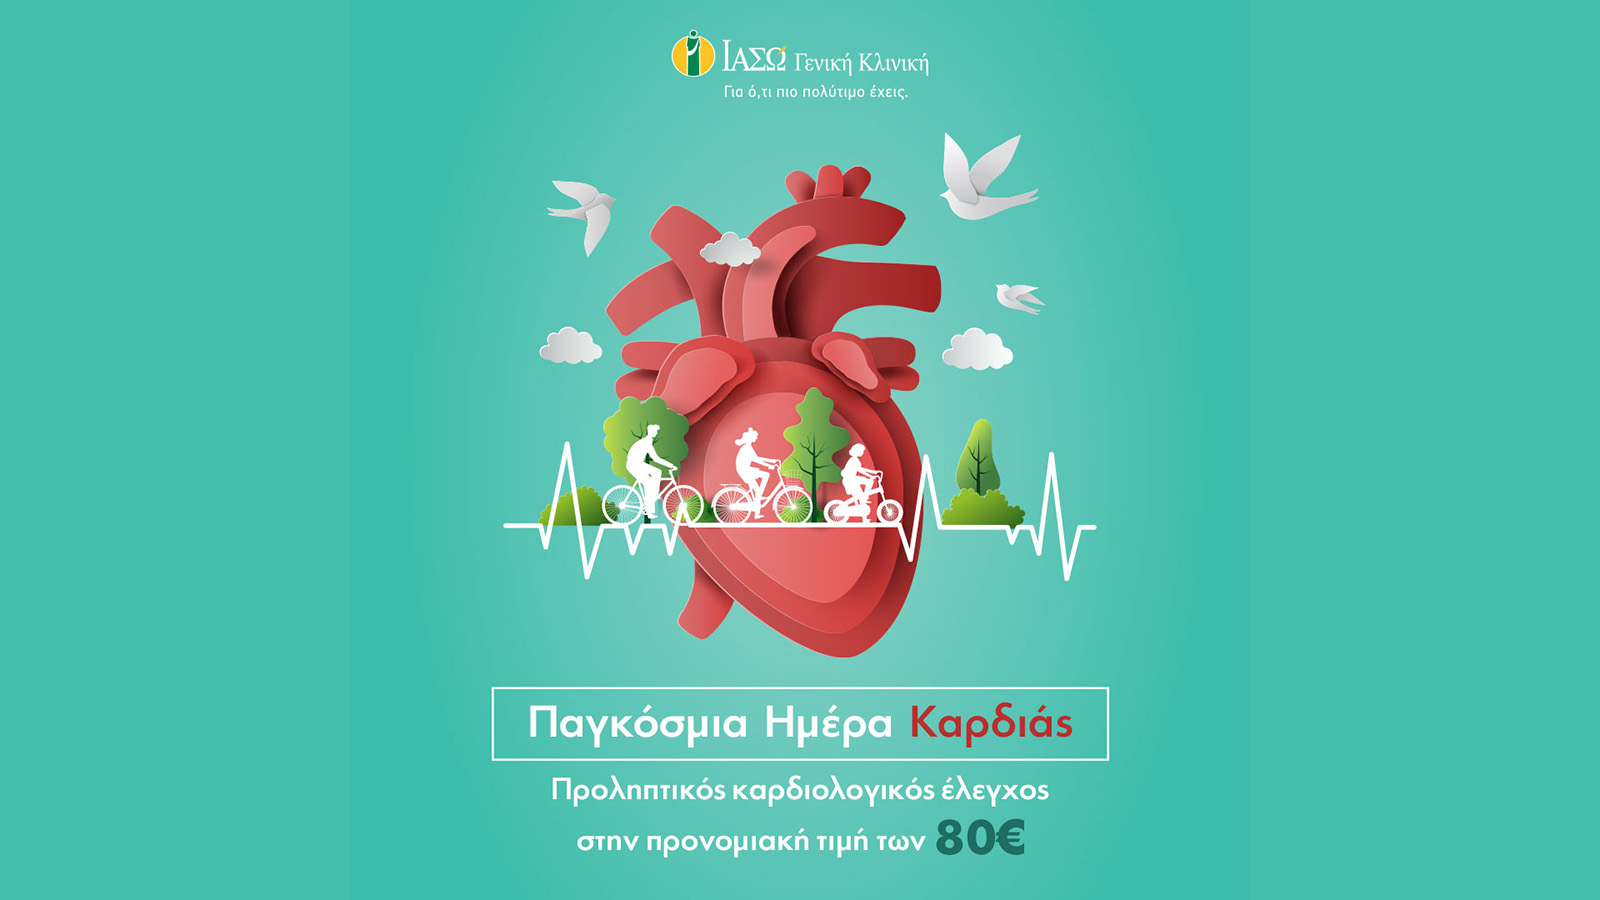 Προσφορά του ΙΑΣΩ Γενική Κλινική με αφορμή την Παγκόσμια Ημέρα Καρδιάς